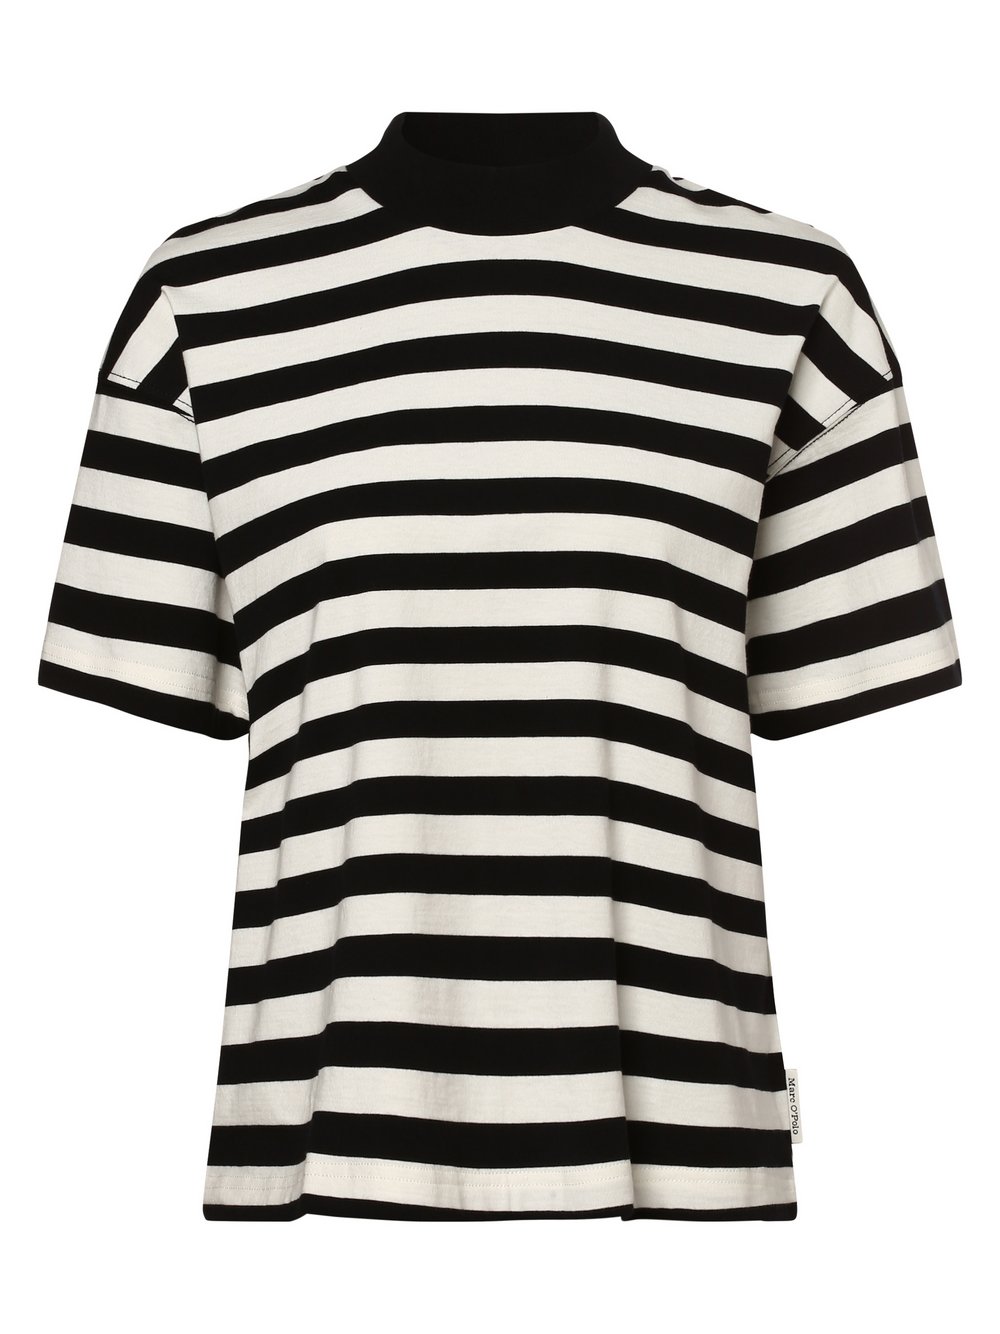 Marc O'Polo - T-shirt damski, czarny|biały